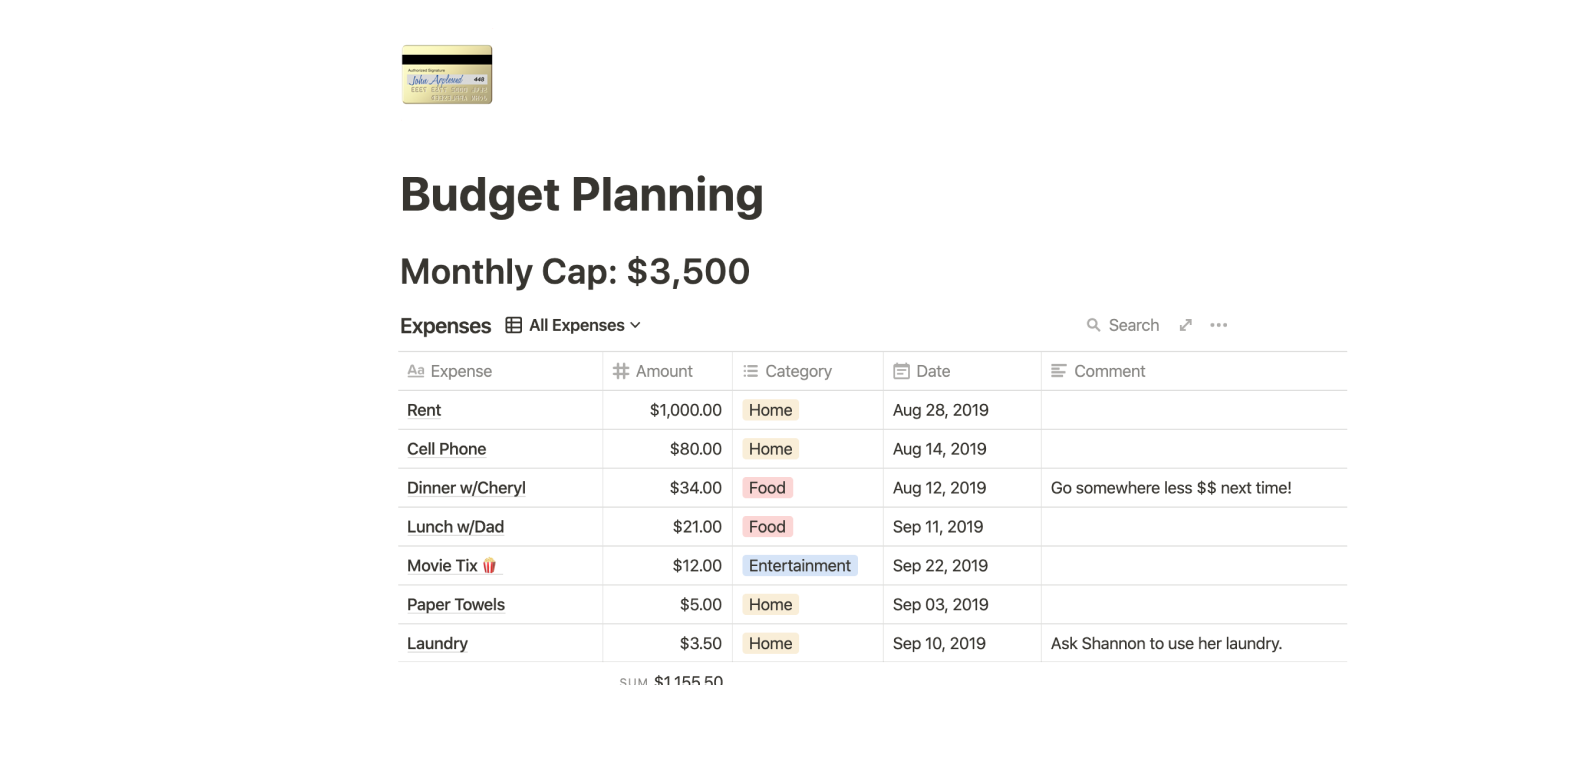 Budget planning Notion template 1 - Come puoi usare la nozione? 8 modelli eccellenti per ispirarti